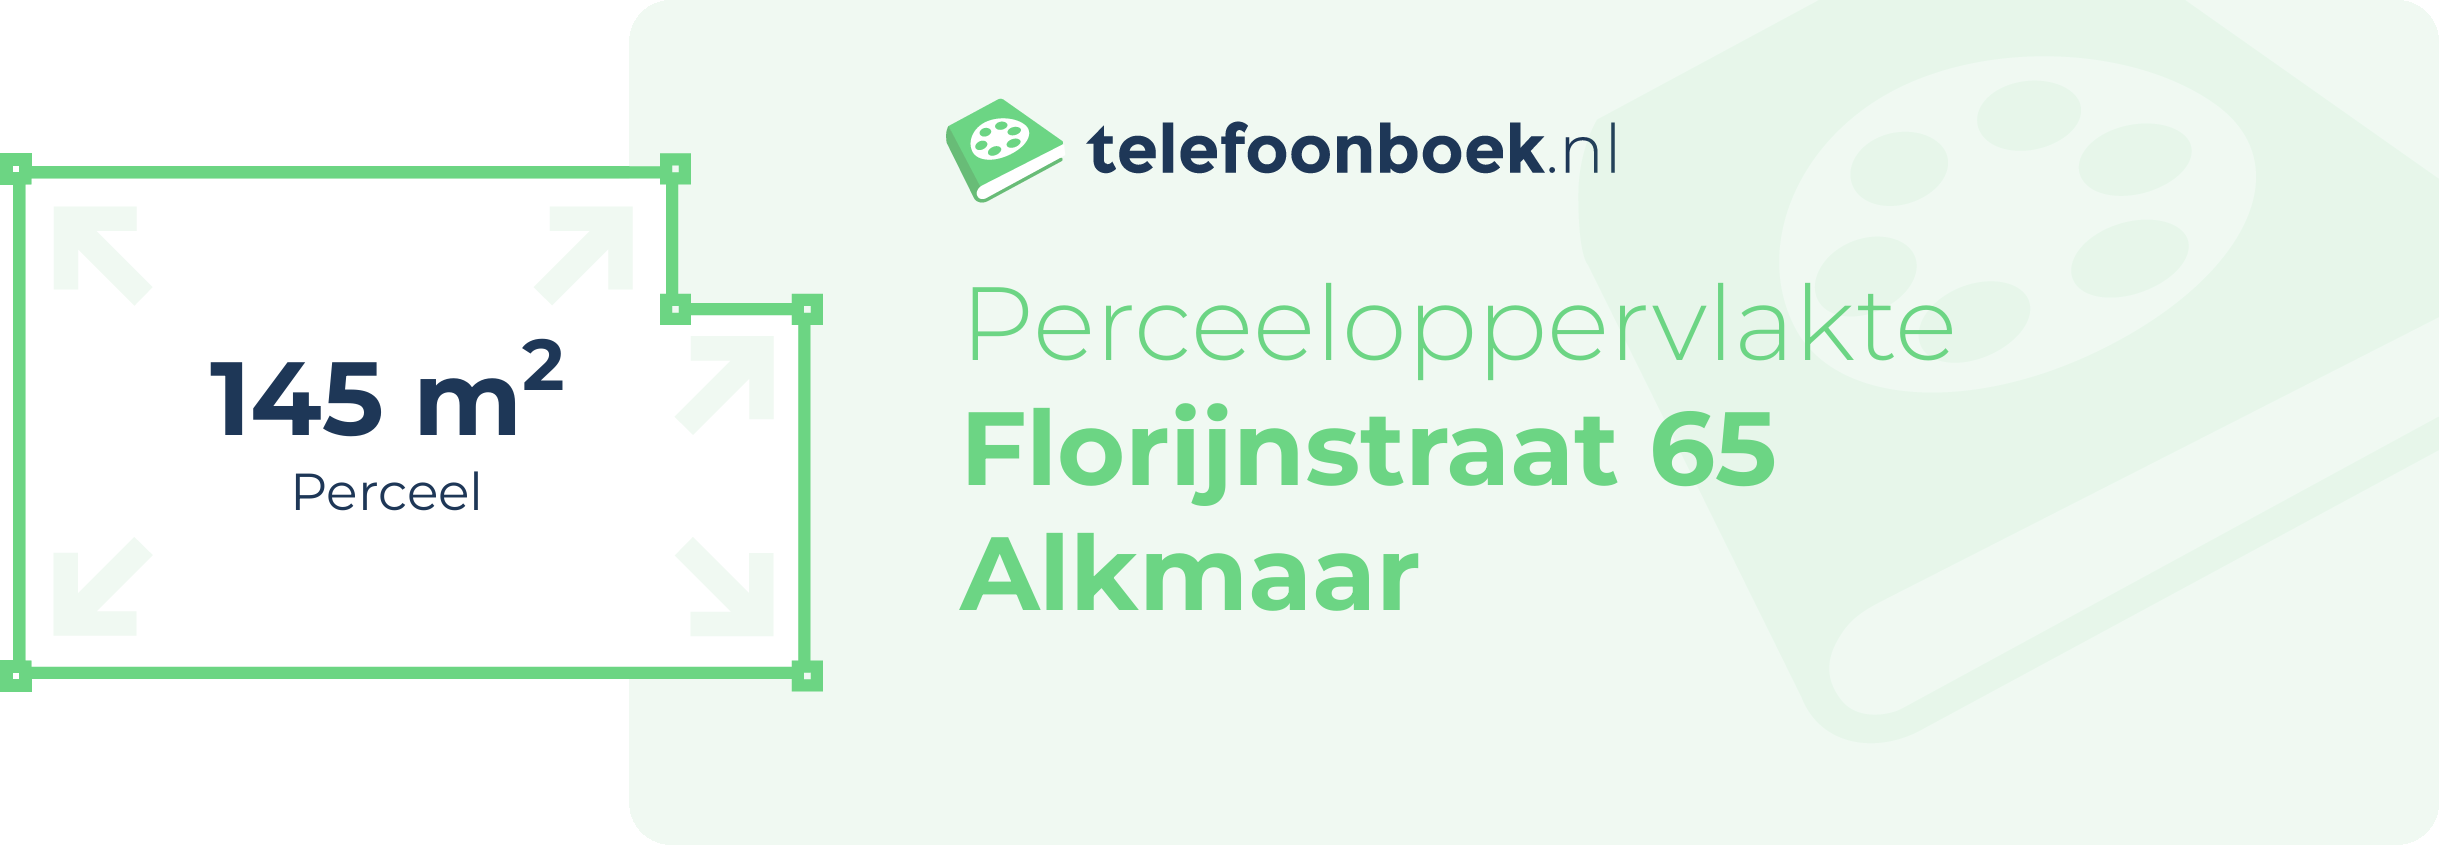 Perceeloppervlakte Florijnstraat 65 Alkmaar